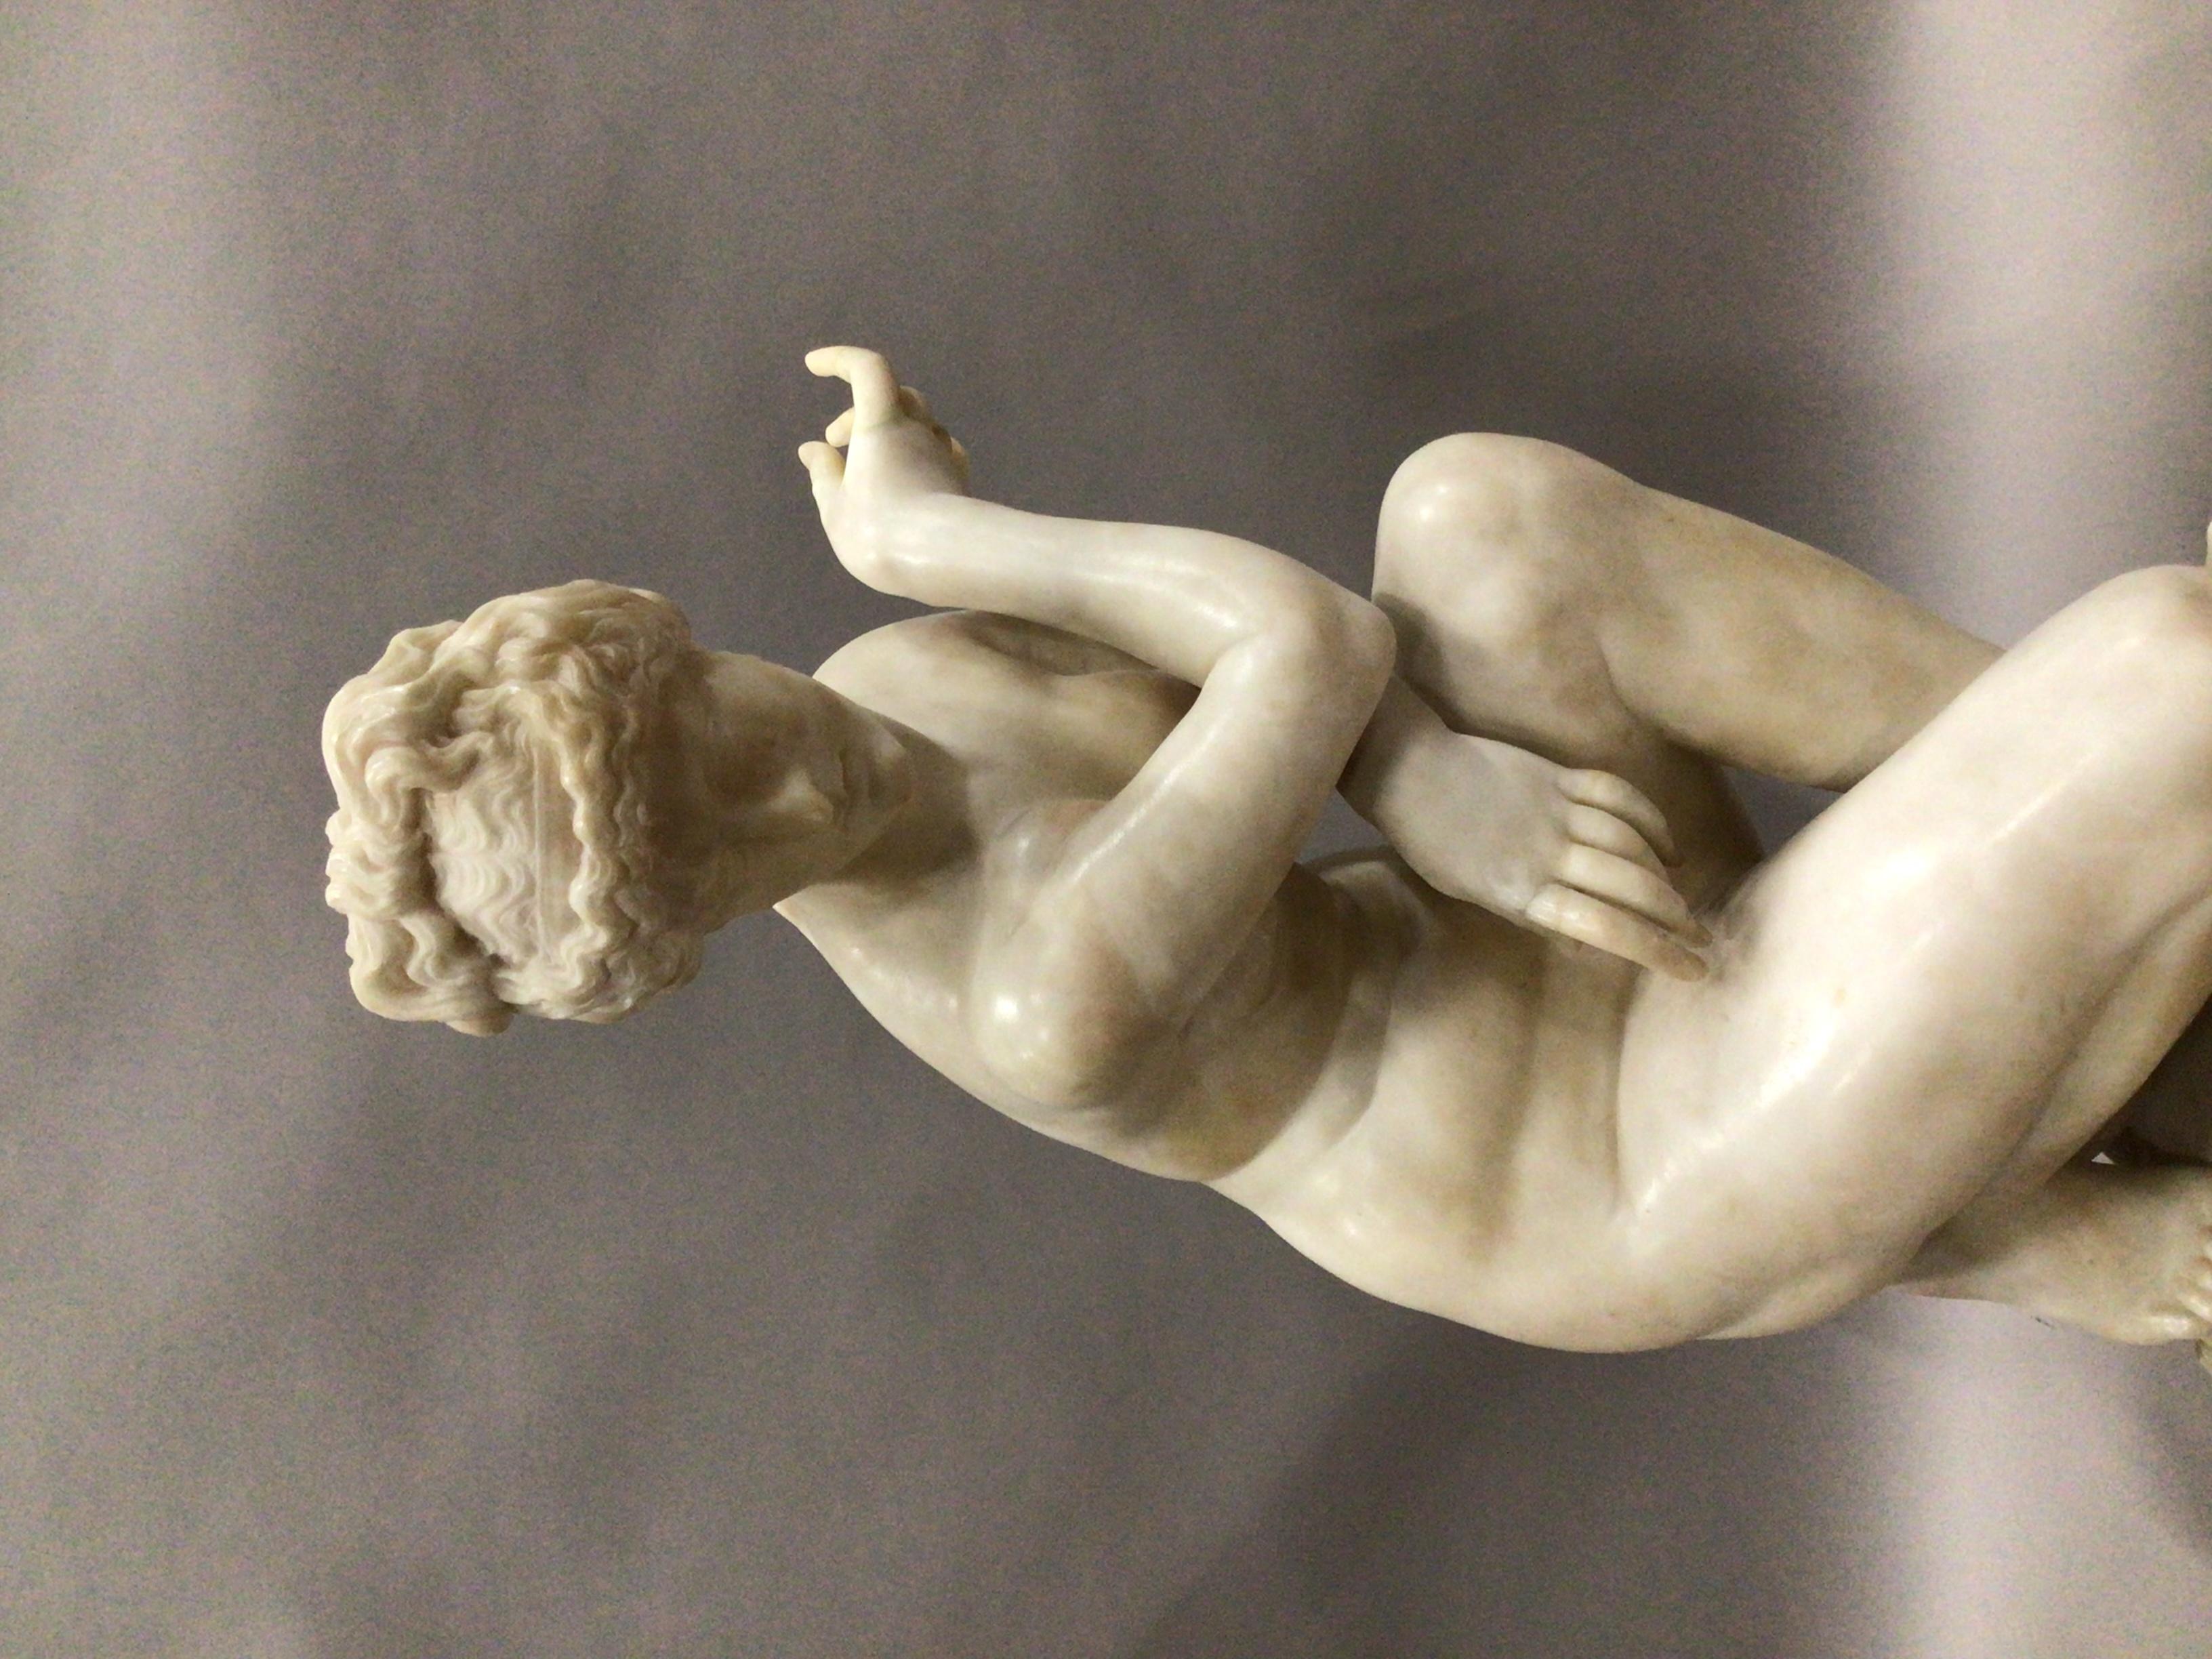 Superbe sculpture en marbre du début du 19e siècle représentant la Vénus accroupie, de bonne taille. La déesse nue est à demi agenouillée sur une base naturaliste intégrale, les bras croisés devant elle pour dissimuler sa nudité, la tête tournée